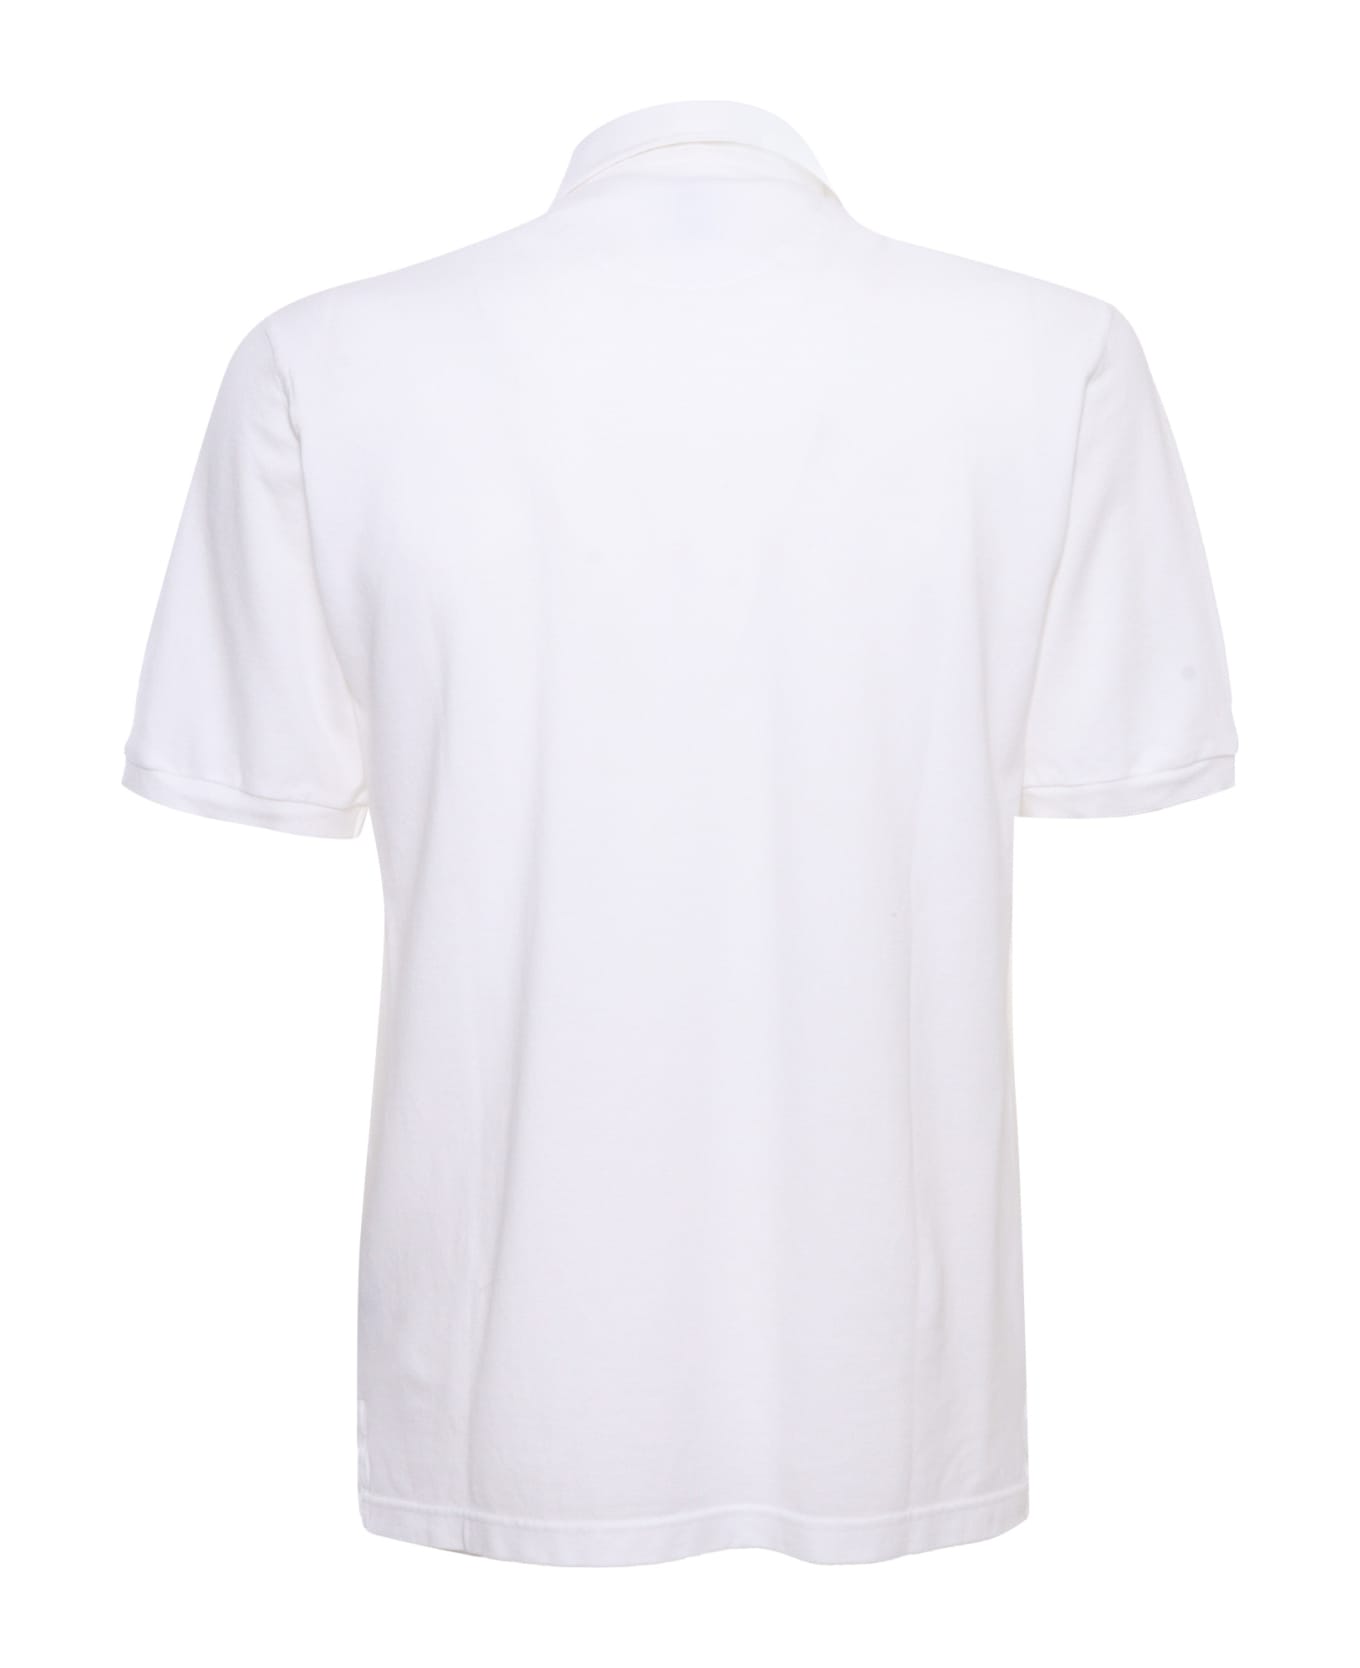 Fedeli White Piquet Polo - WHITE ポロシャツ